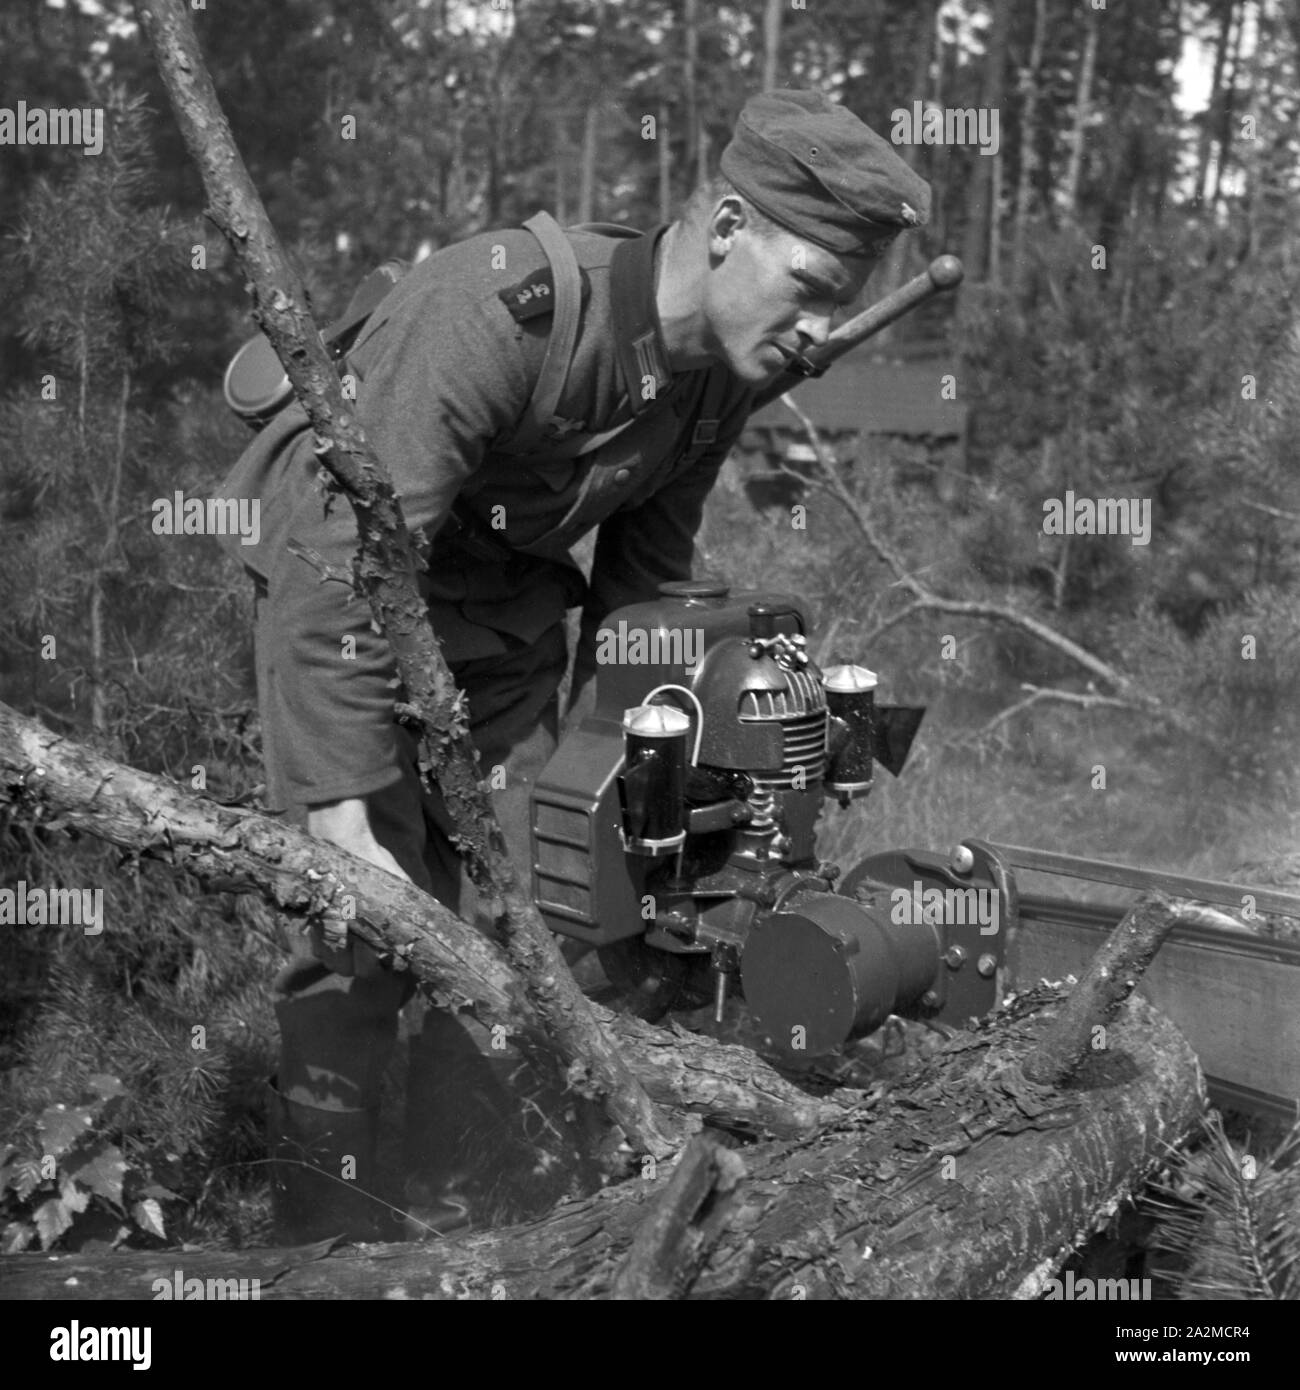 Original-Bildunterschrift: Bei der Arbeit mit der Kraftsäge, Deutschland 1940er Jahre. Soldier using a chainsaw, Germany 1940s. Stock Photo